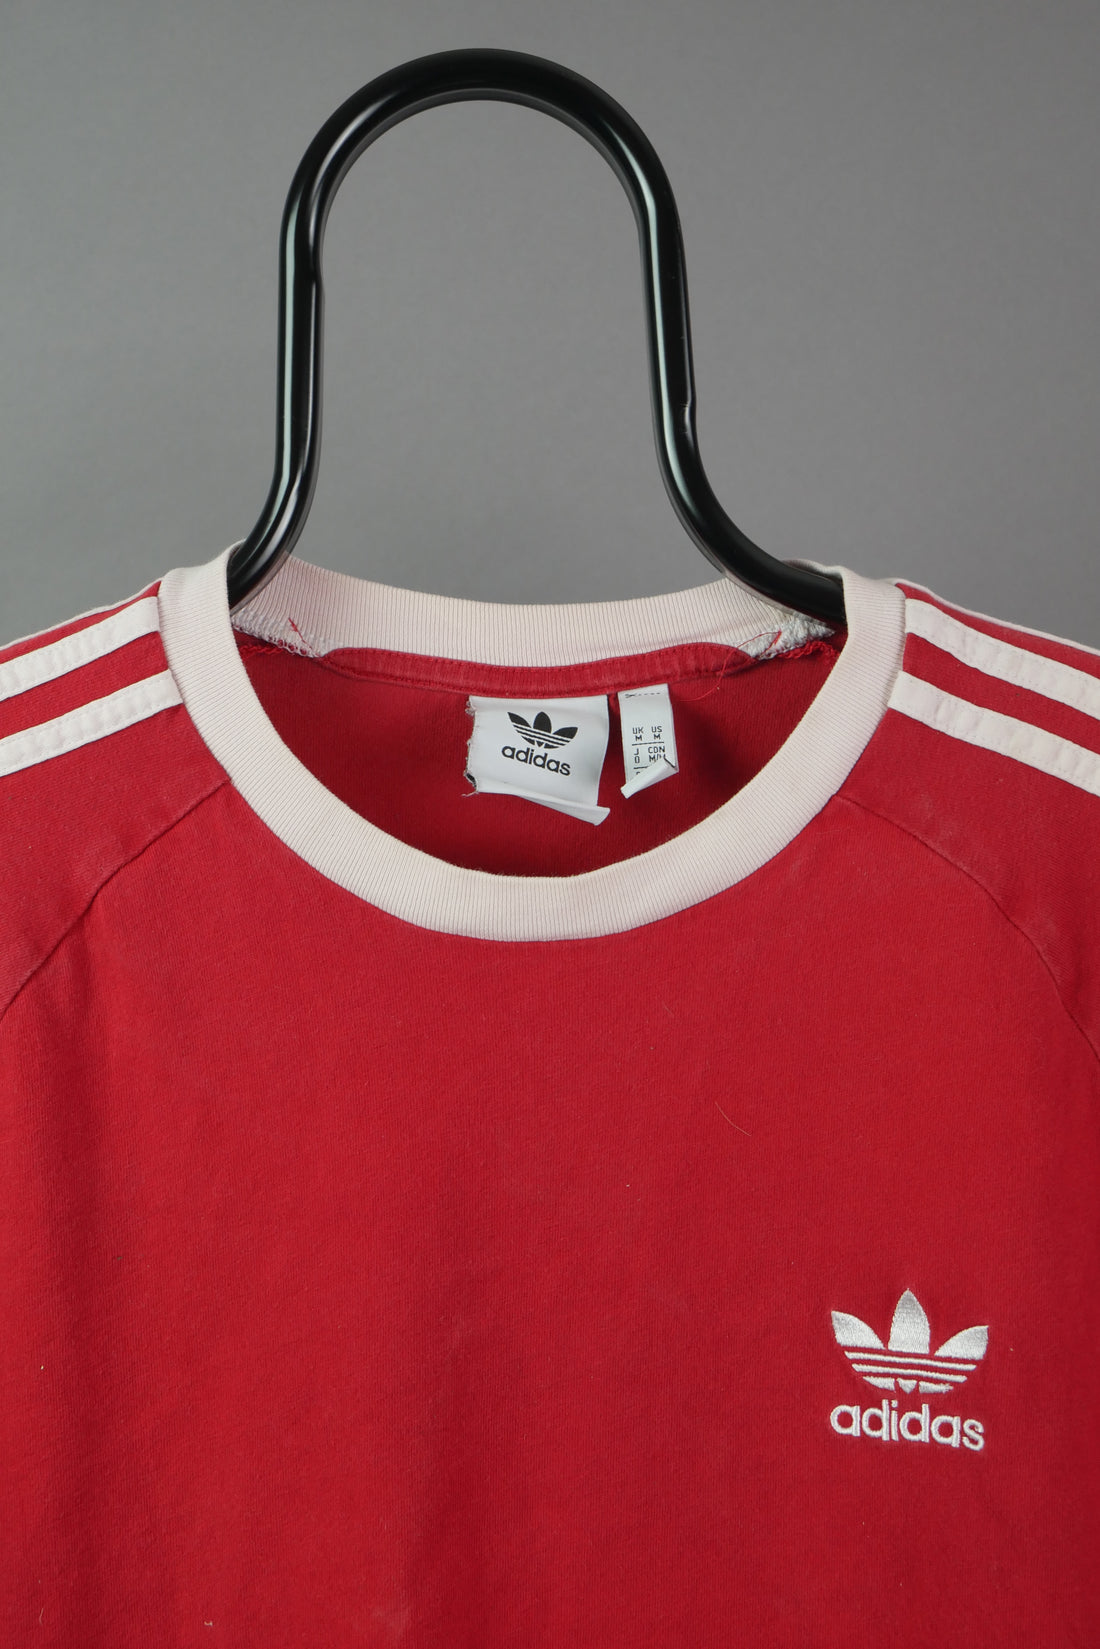 The Adidas Original T-Shirt (M)